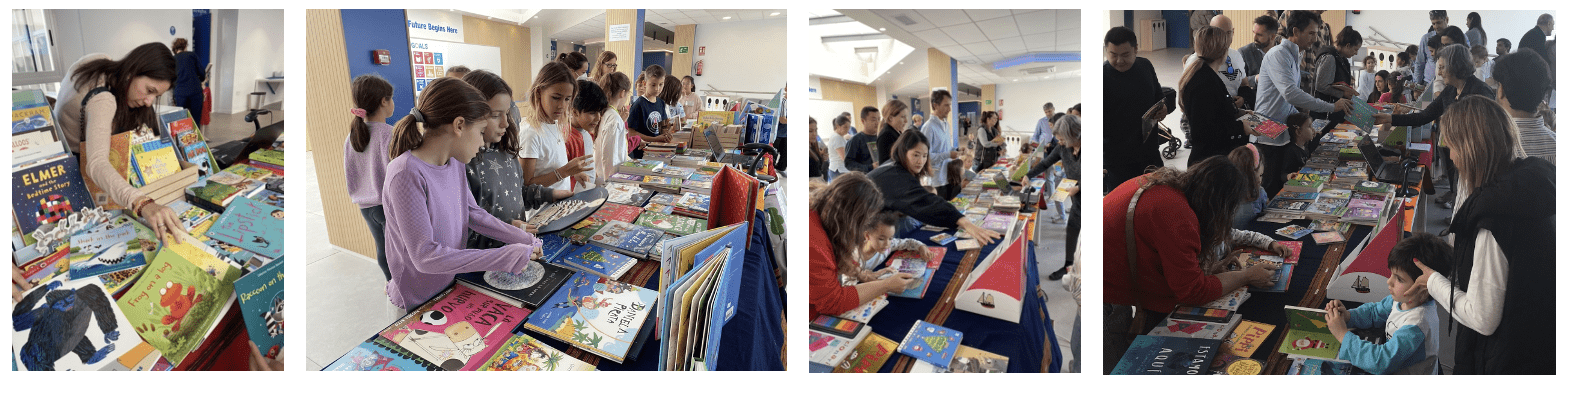 Feria del libro Collage